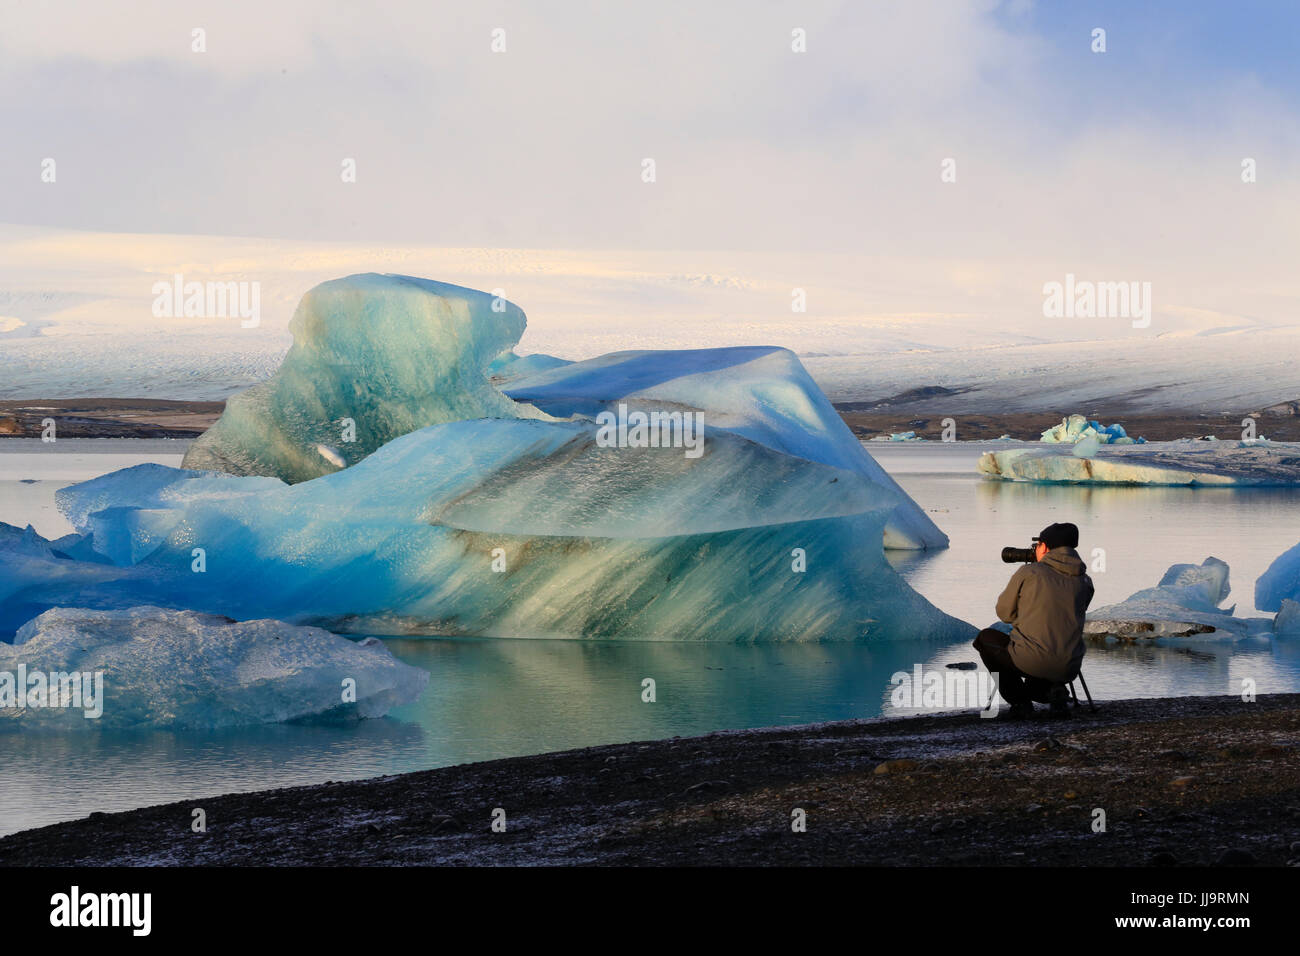 Photographe au glacier Jökulsárlón lagoon, Iceland, photographiant des icebergs qui viennent de la glacier Breiðamerkurjökull qui alimente dans la lagune. Banque D'Images